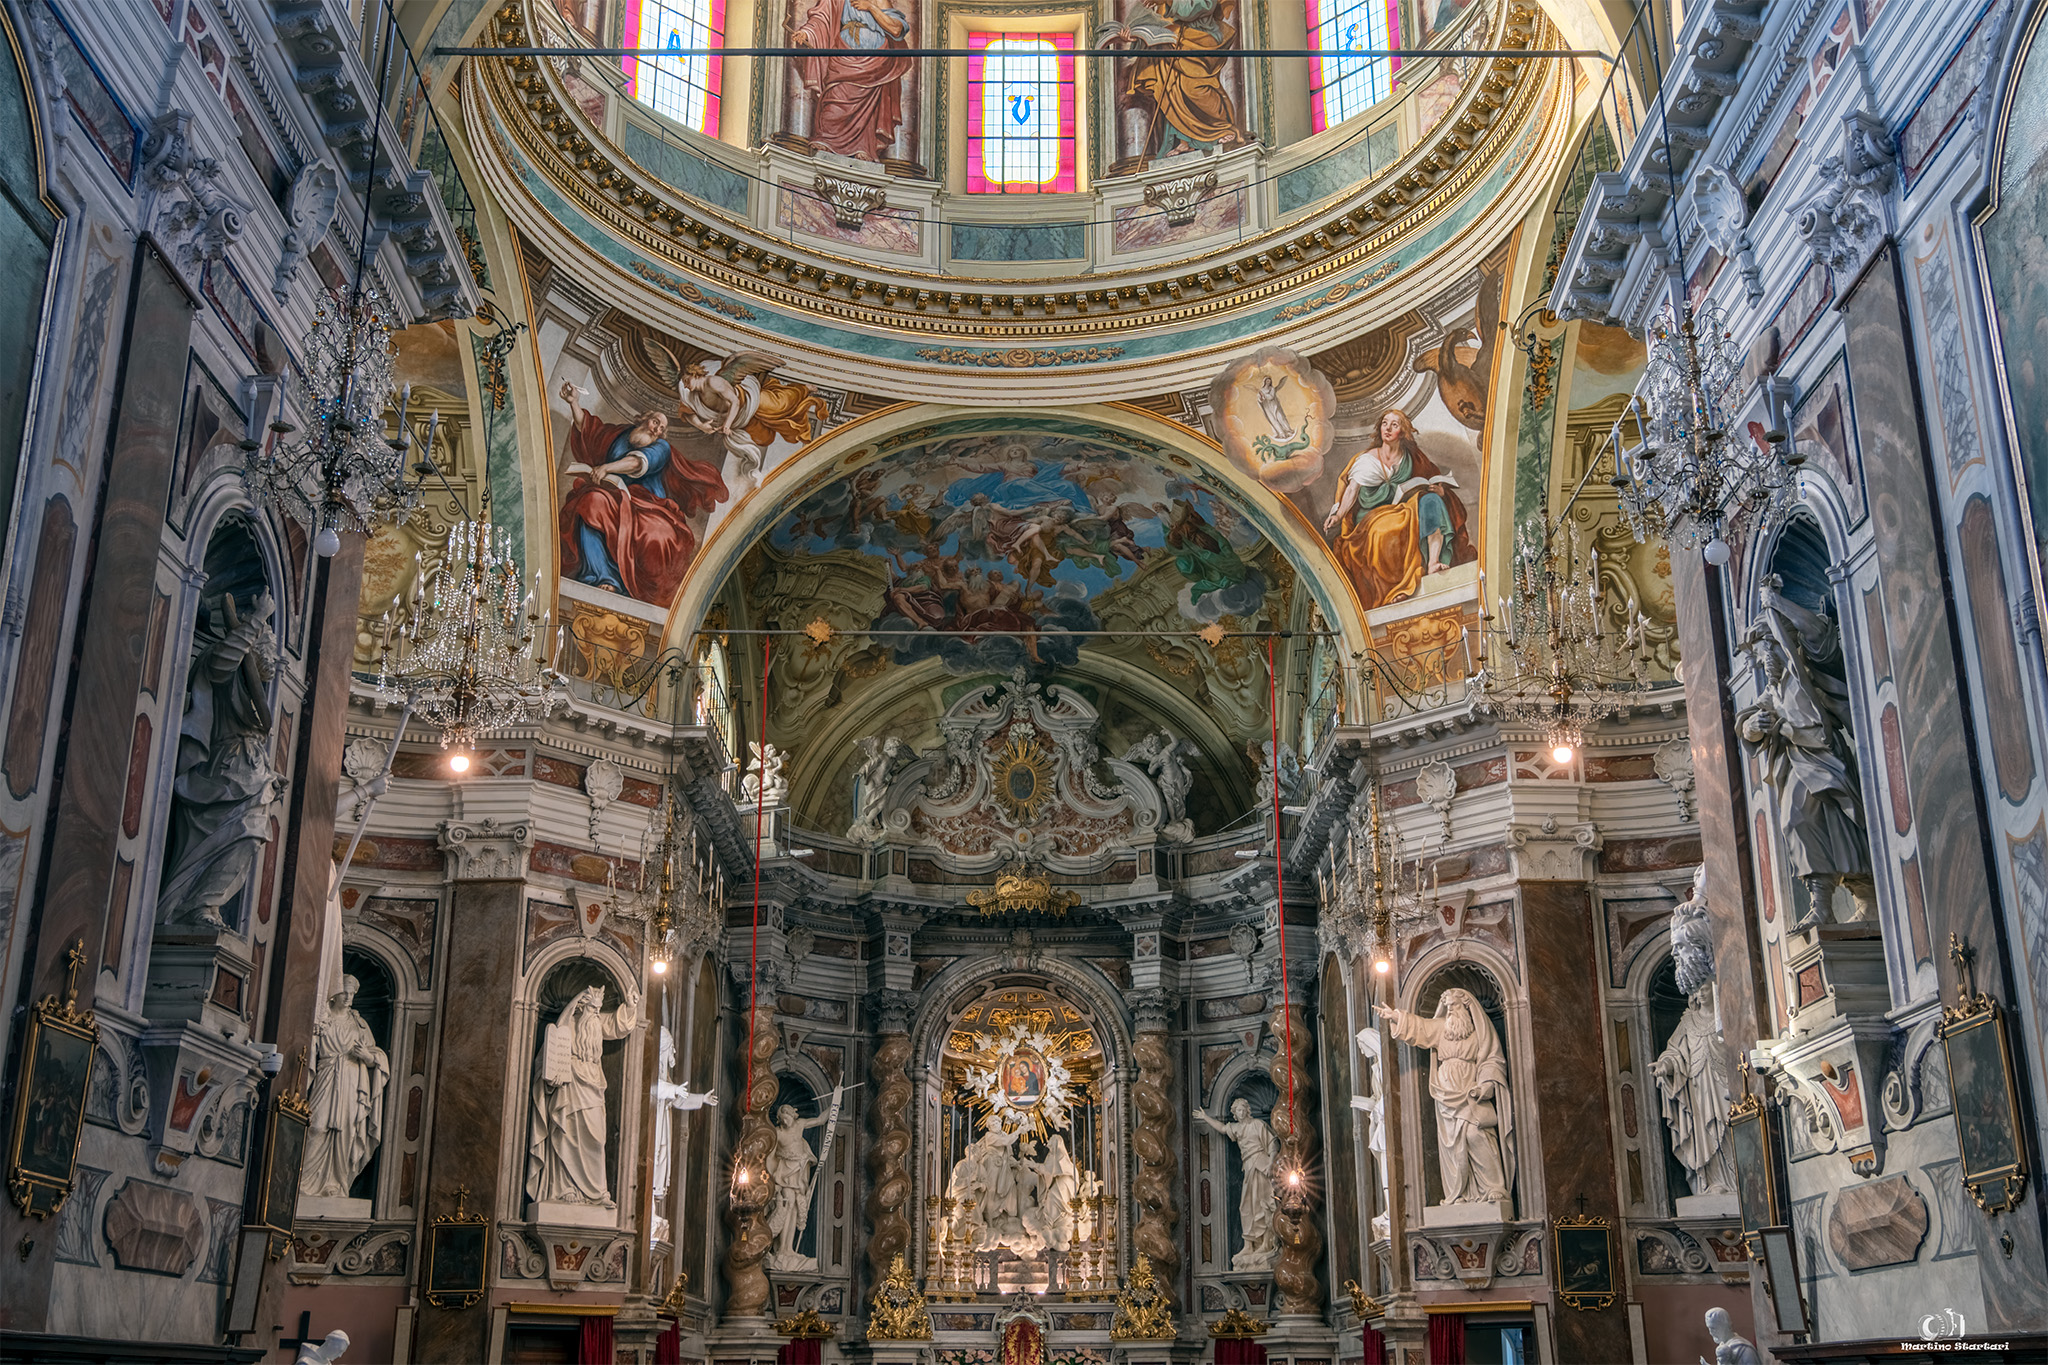 Inside the sanctuary madonna della costa...